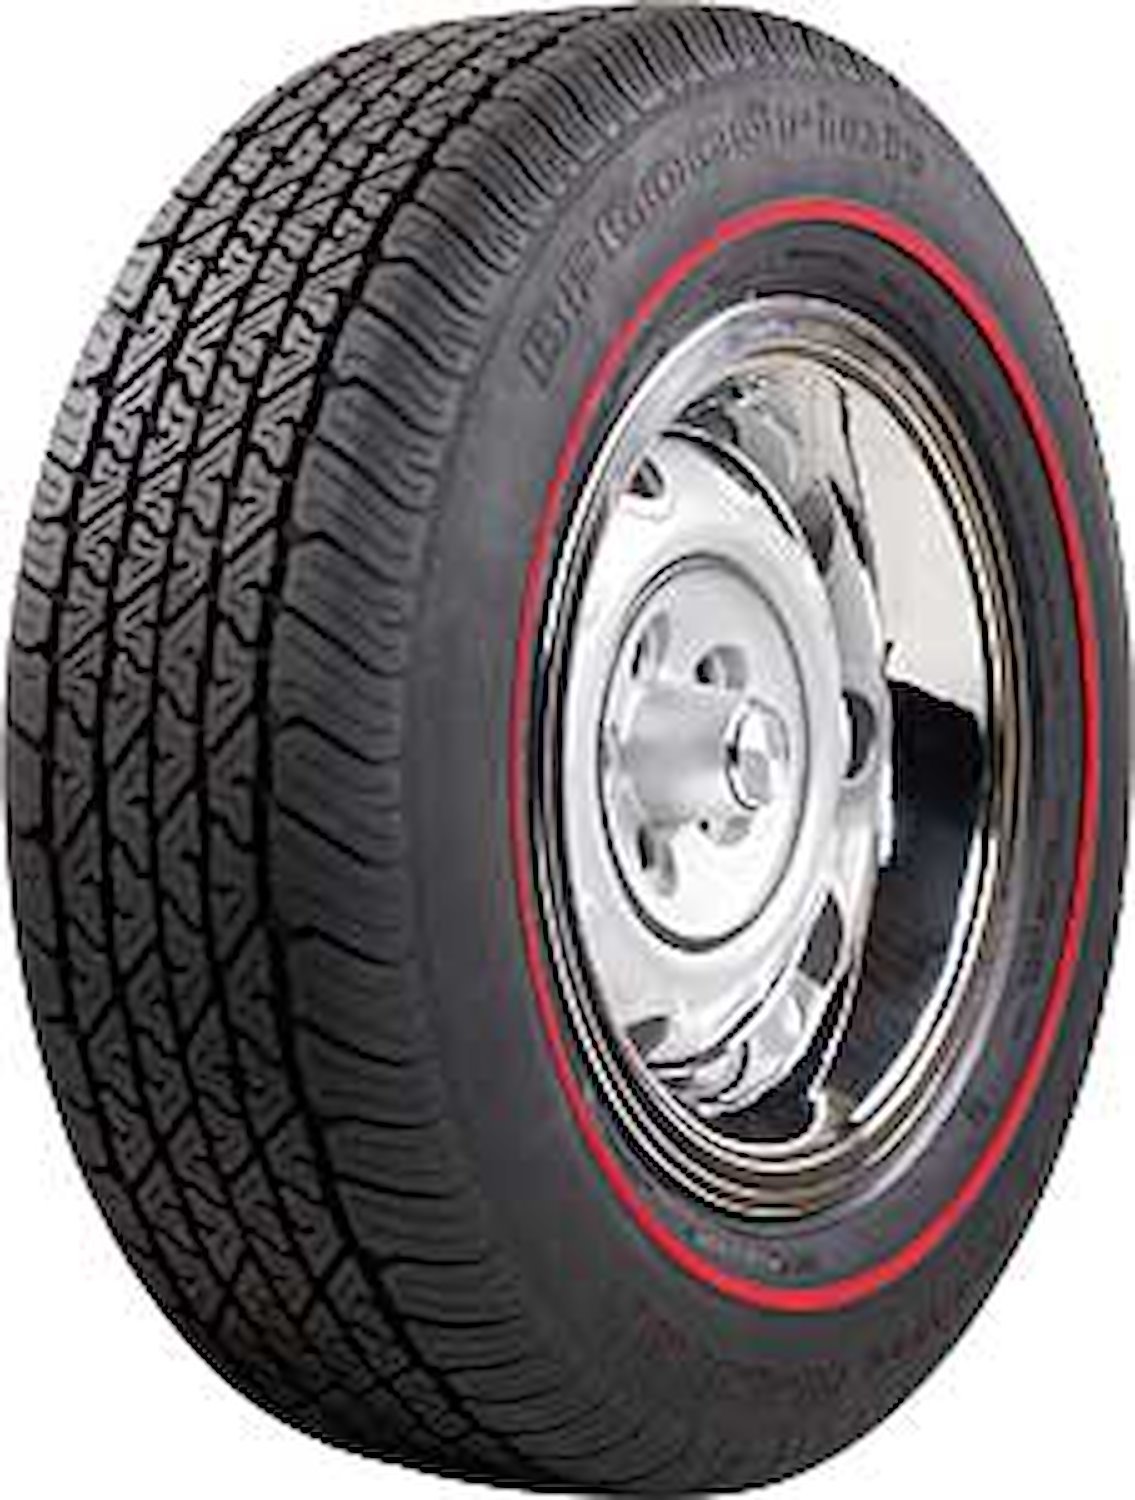 BF Goodrich Silvertown Redline Radial Tire P235/70R15